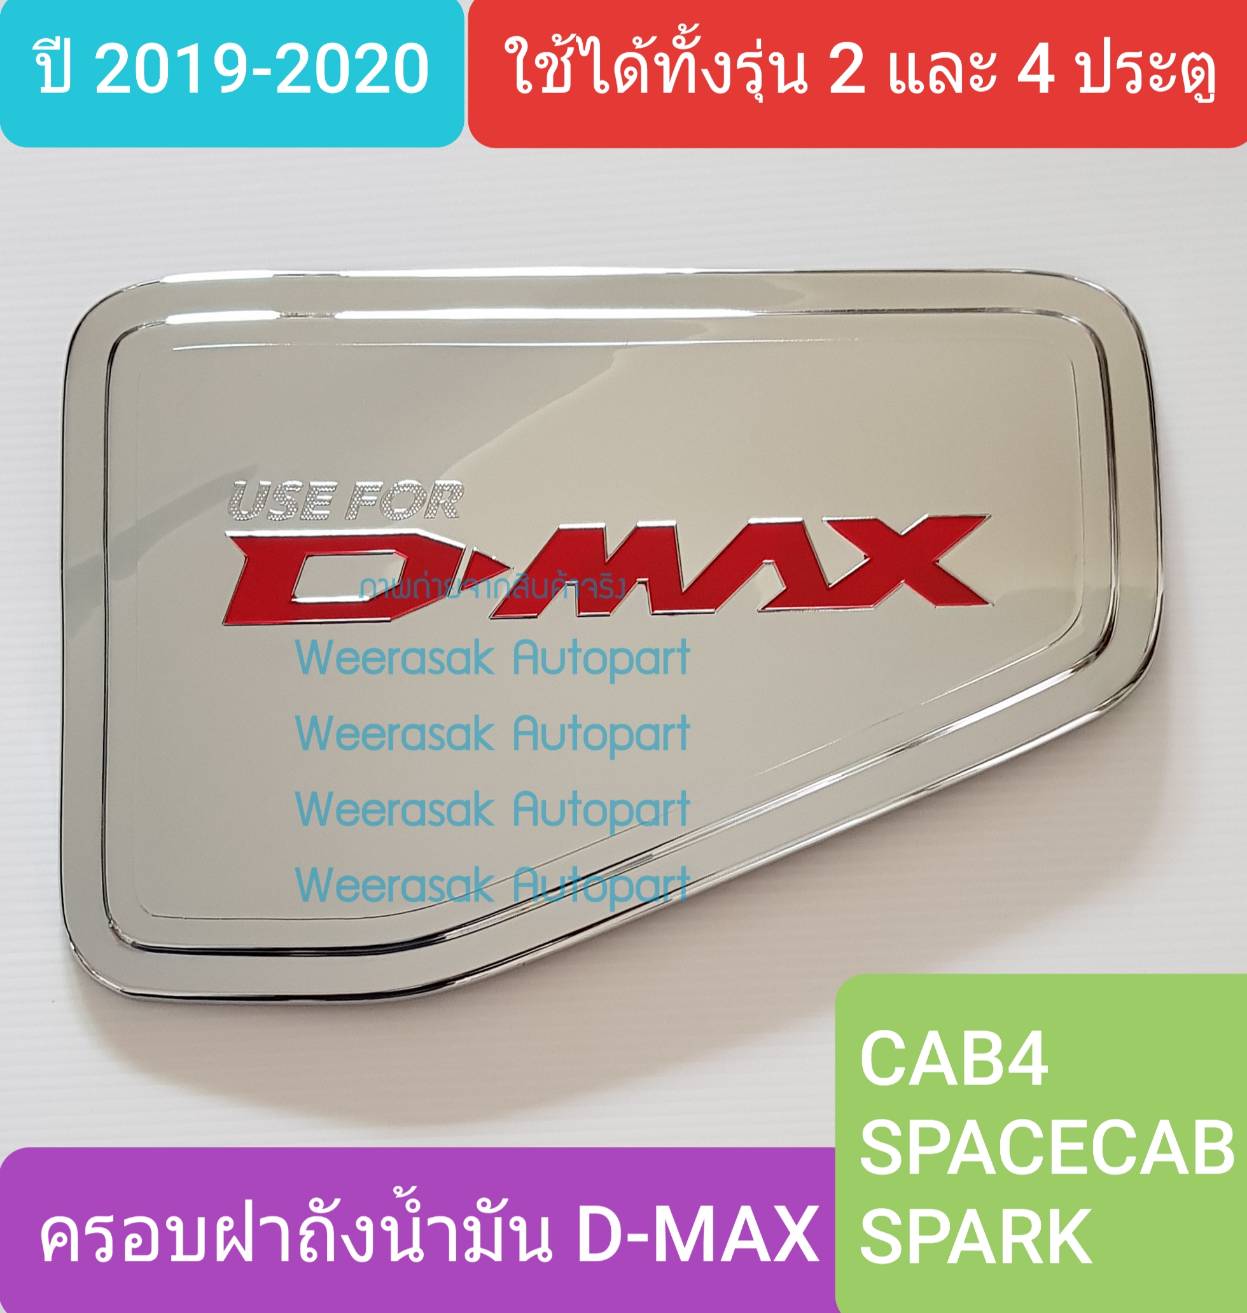 ครอบฝาถังน้ำมัน ISUZU DMAX D-MAX CAB4/SPACECAB/SPARK กระบะ 2 และ 4 ประตูปี 2020 (สีเงินโลโก้สีแดง)(ใช้เทปกาว 3M)